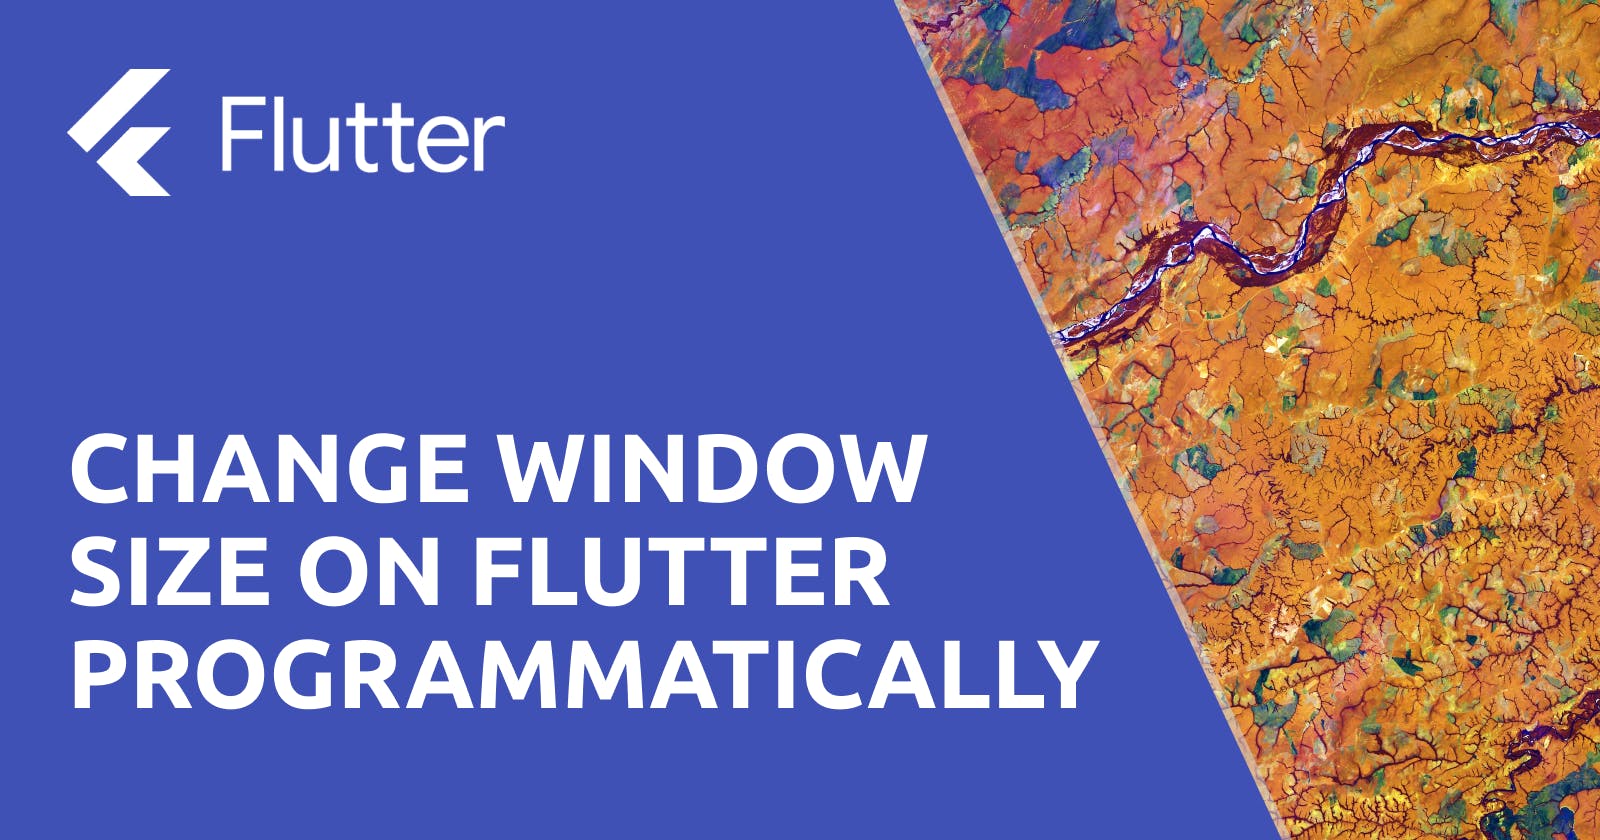 Change window size on Flutter programmatically